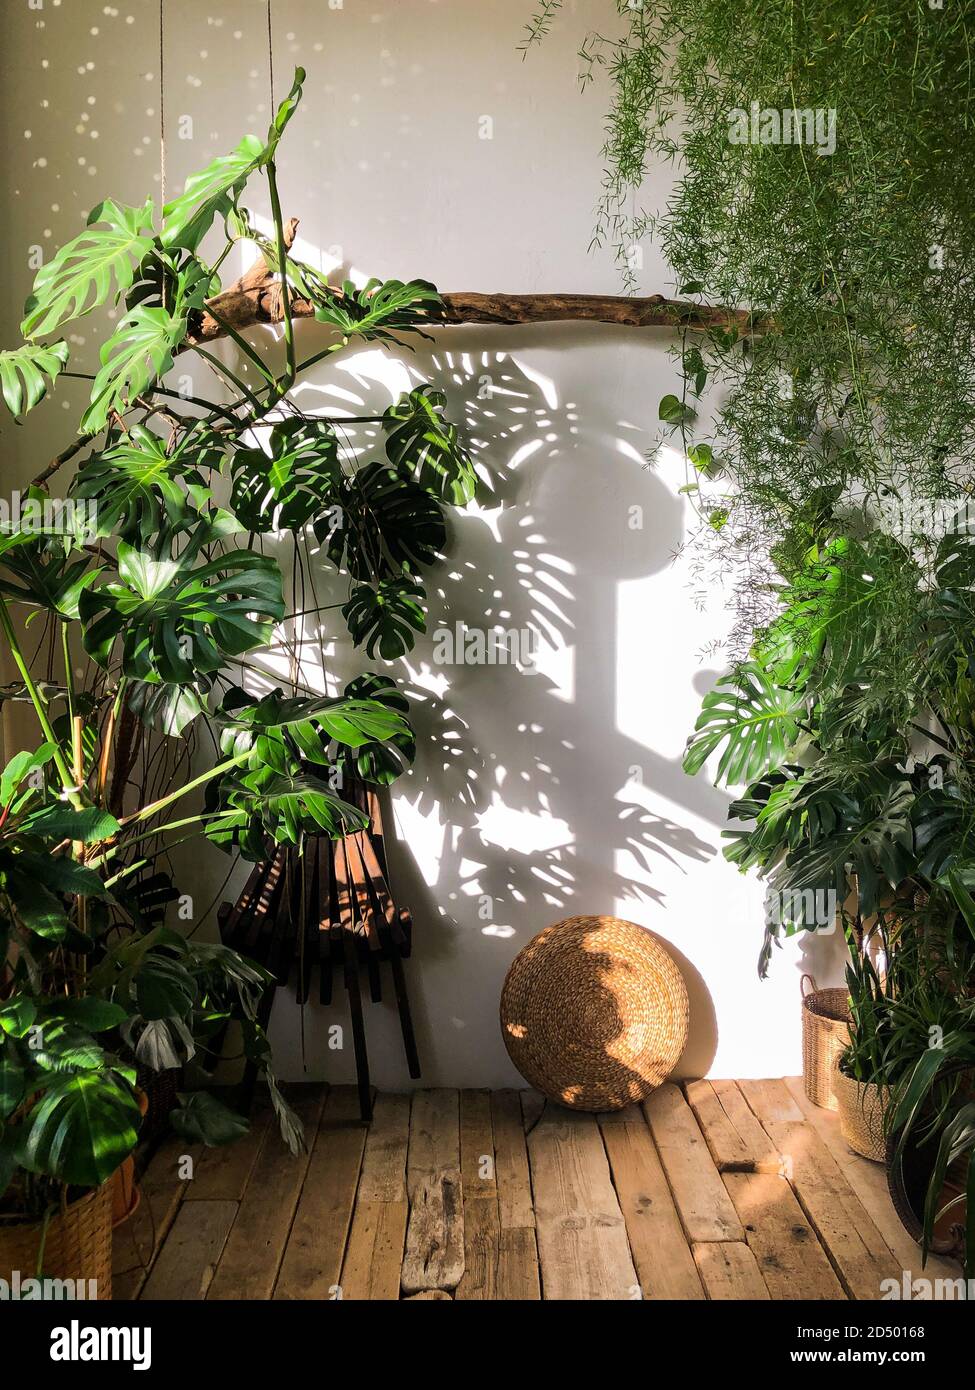 Blick auf die Zimmerpflanze Monstera im Wohnzimmer mit Holzboden. Innenanlage durch das Sonnenlicht beleuchtet. Gemütlicher Hausgarten Stockfoto